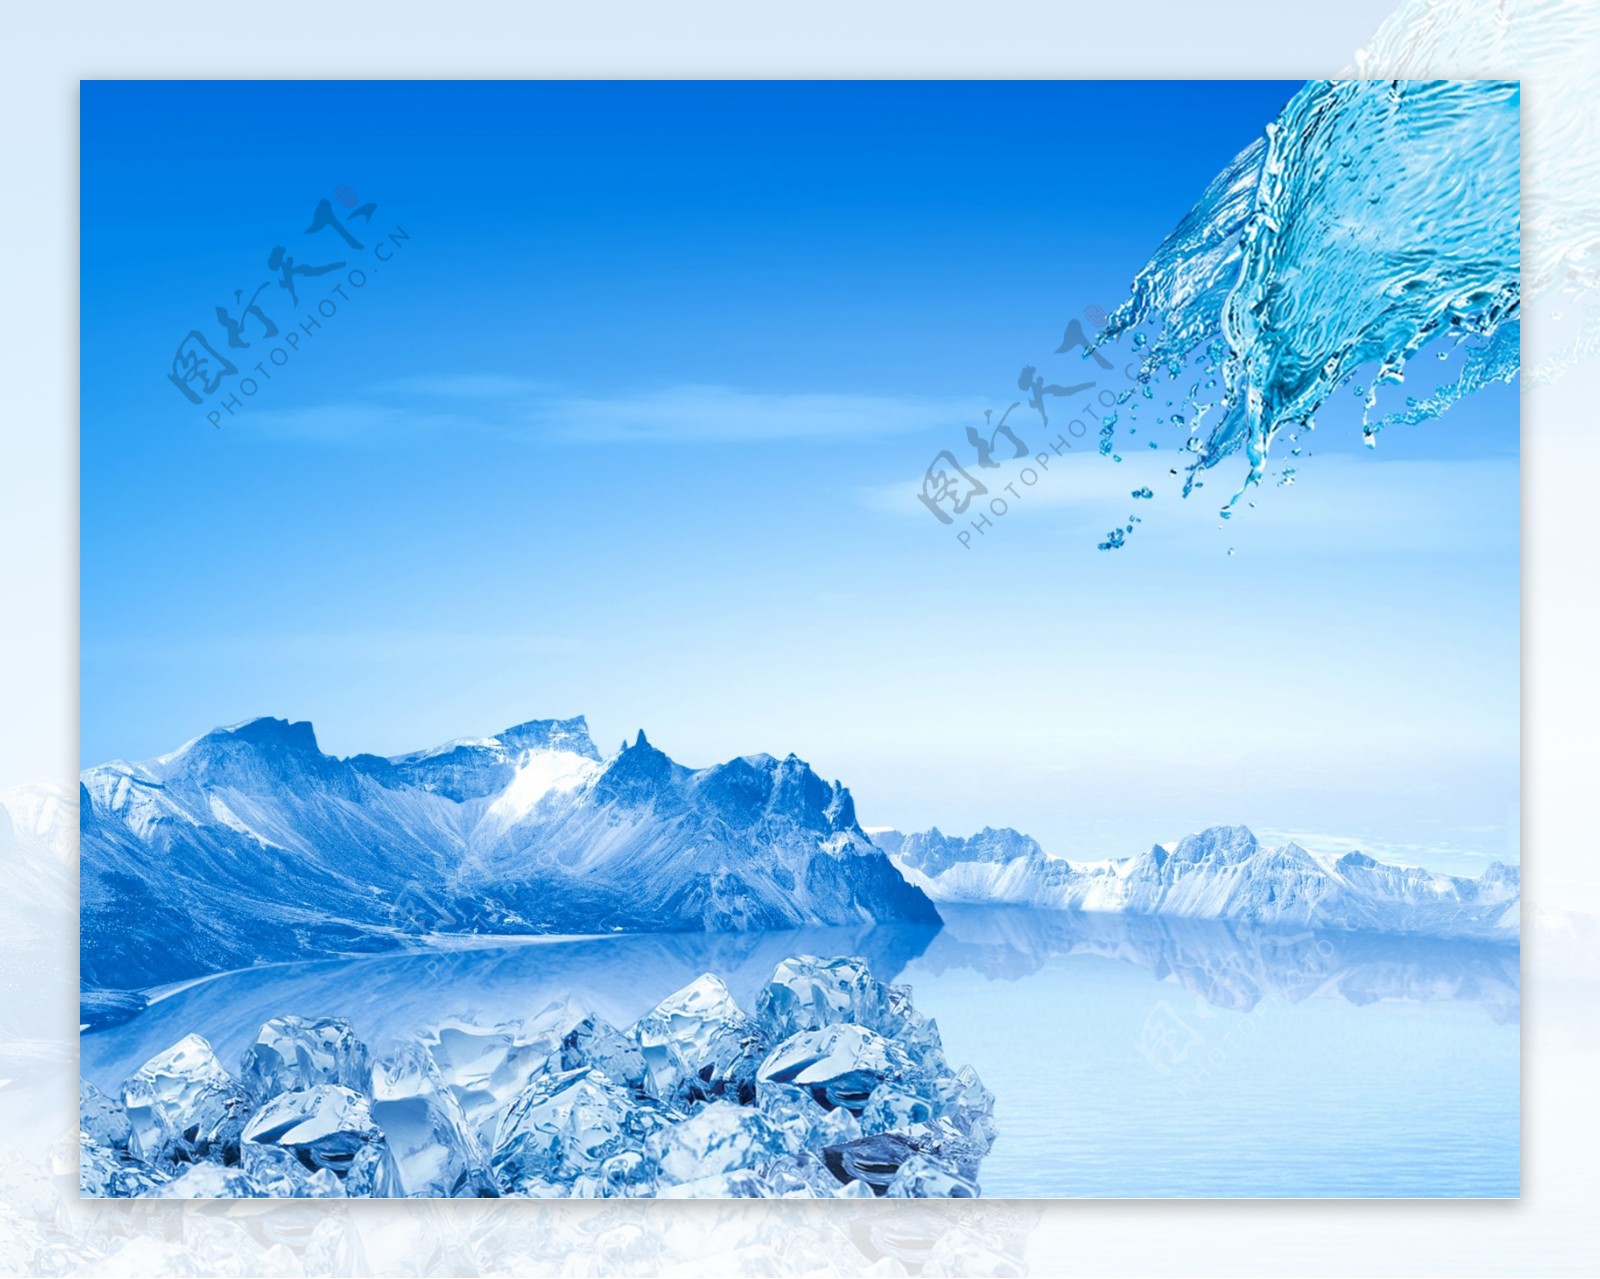 清凉冰山背景图片